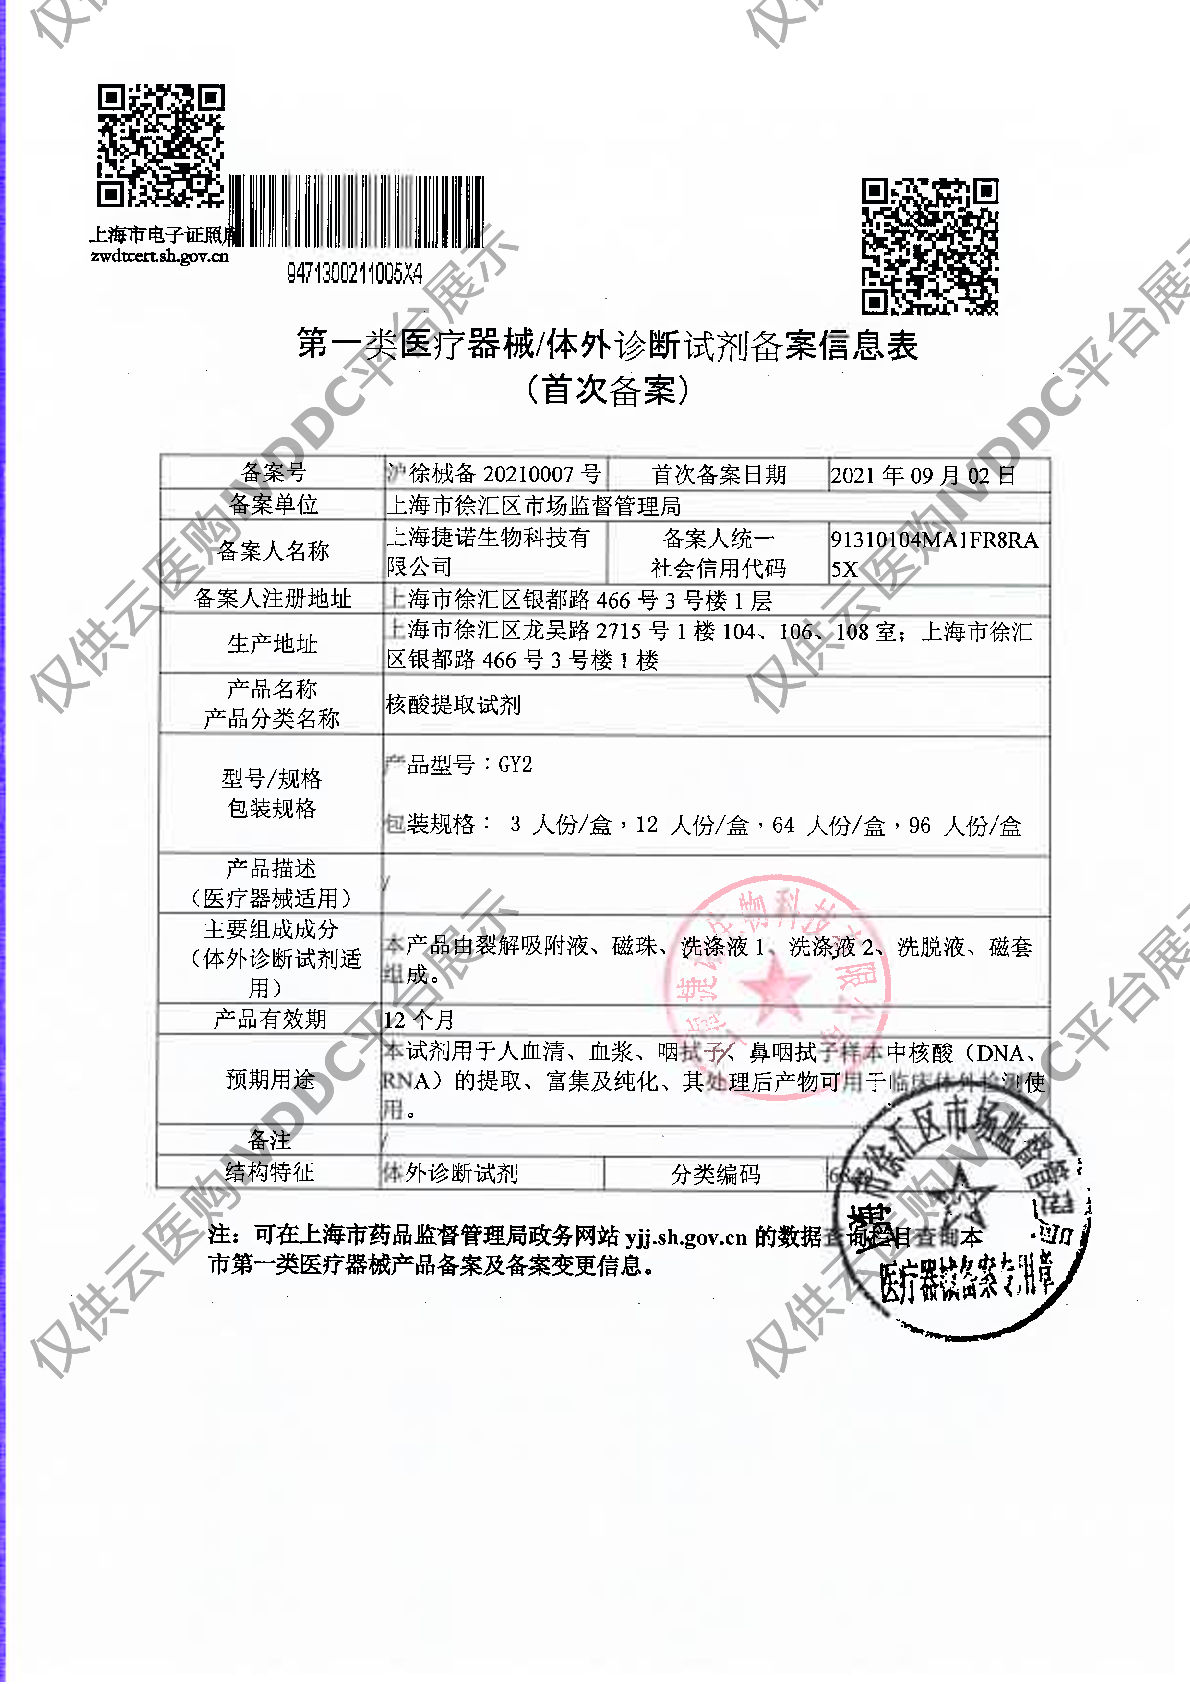 【捷诺】核酸提取试剂2注册证